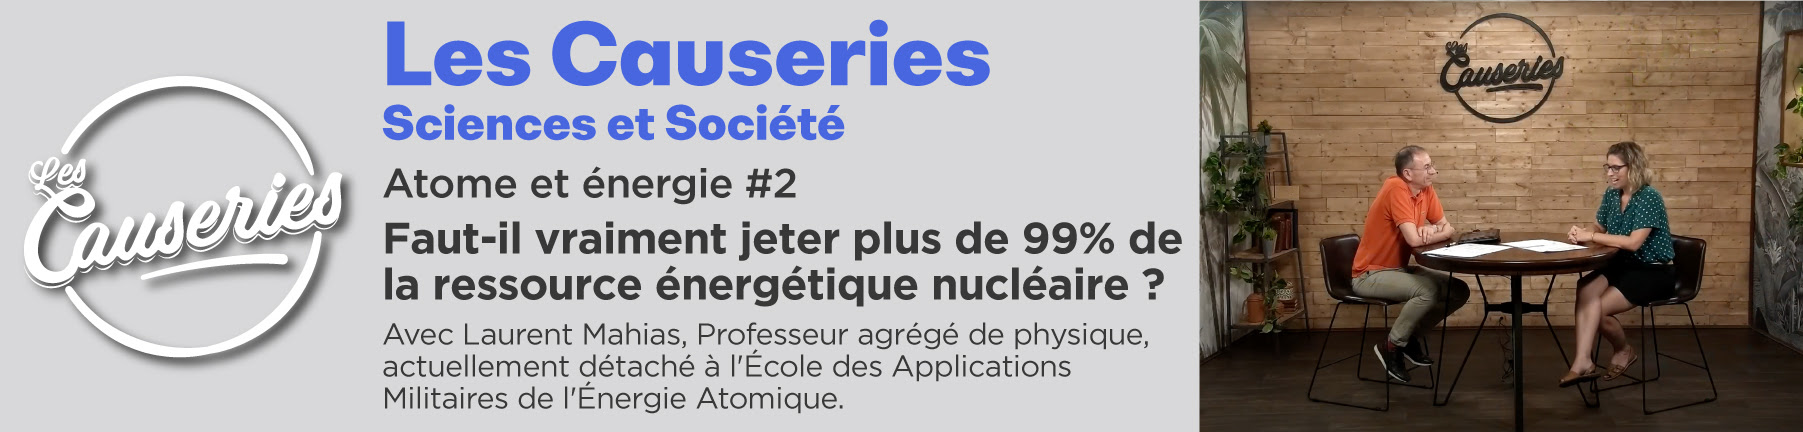 Causerie Sciences et Société